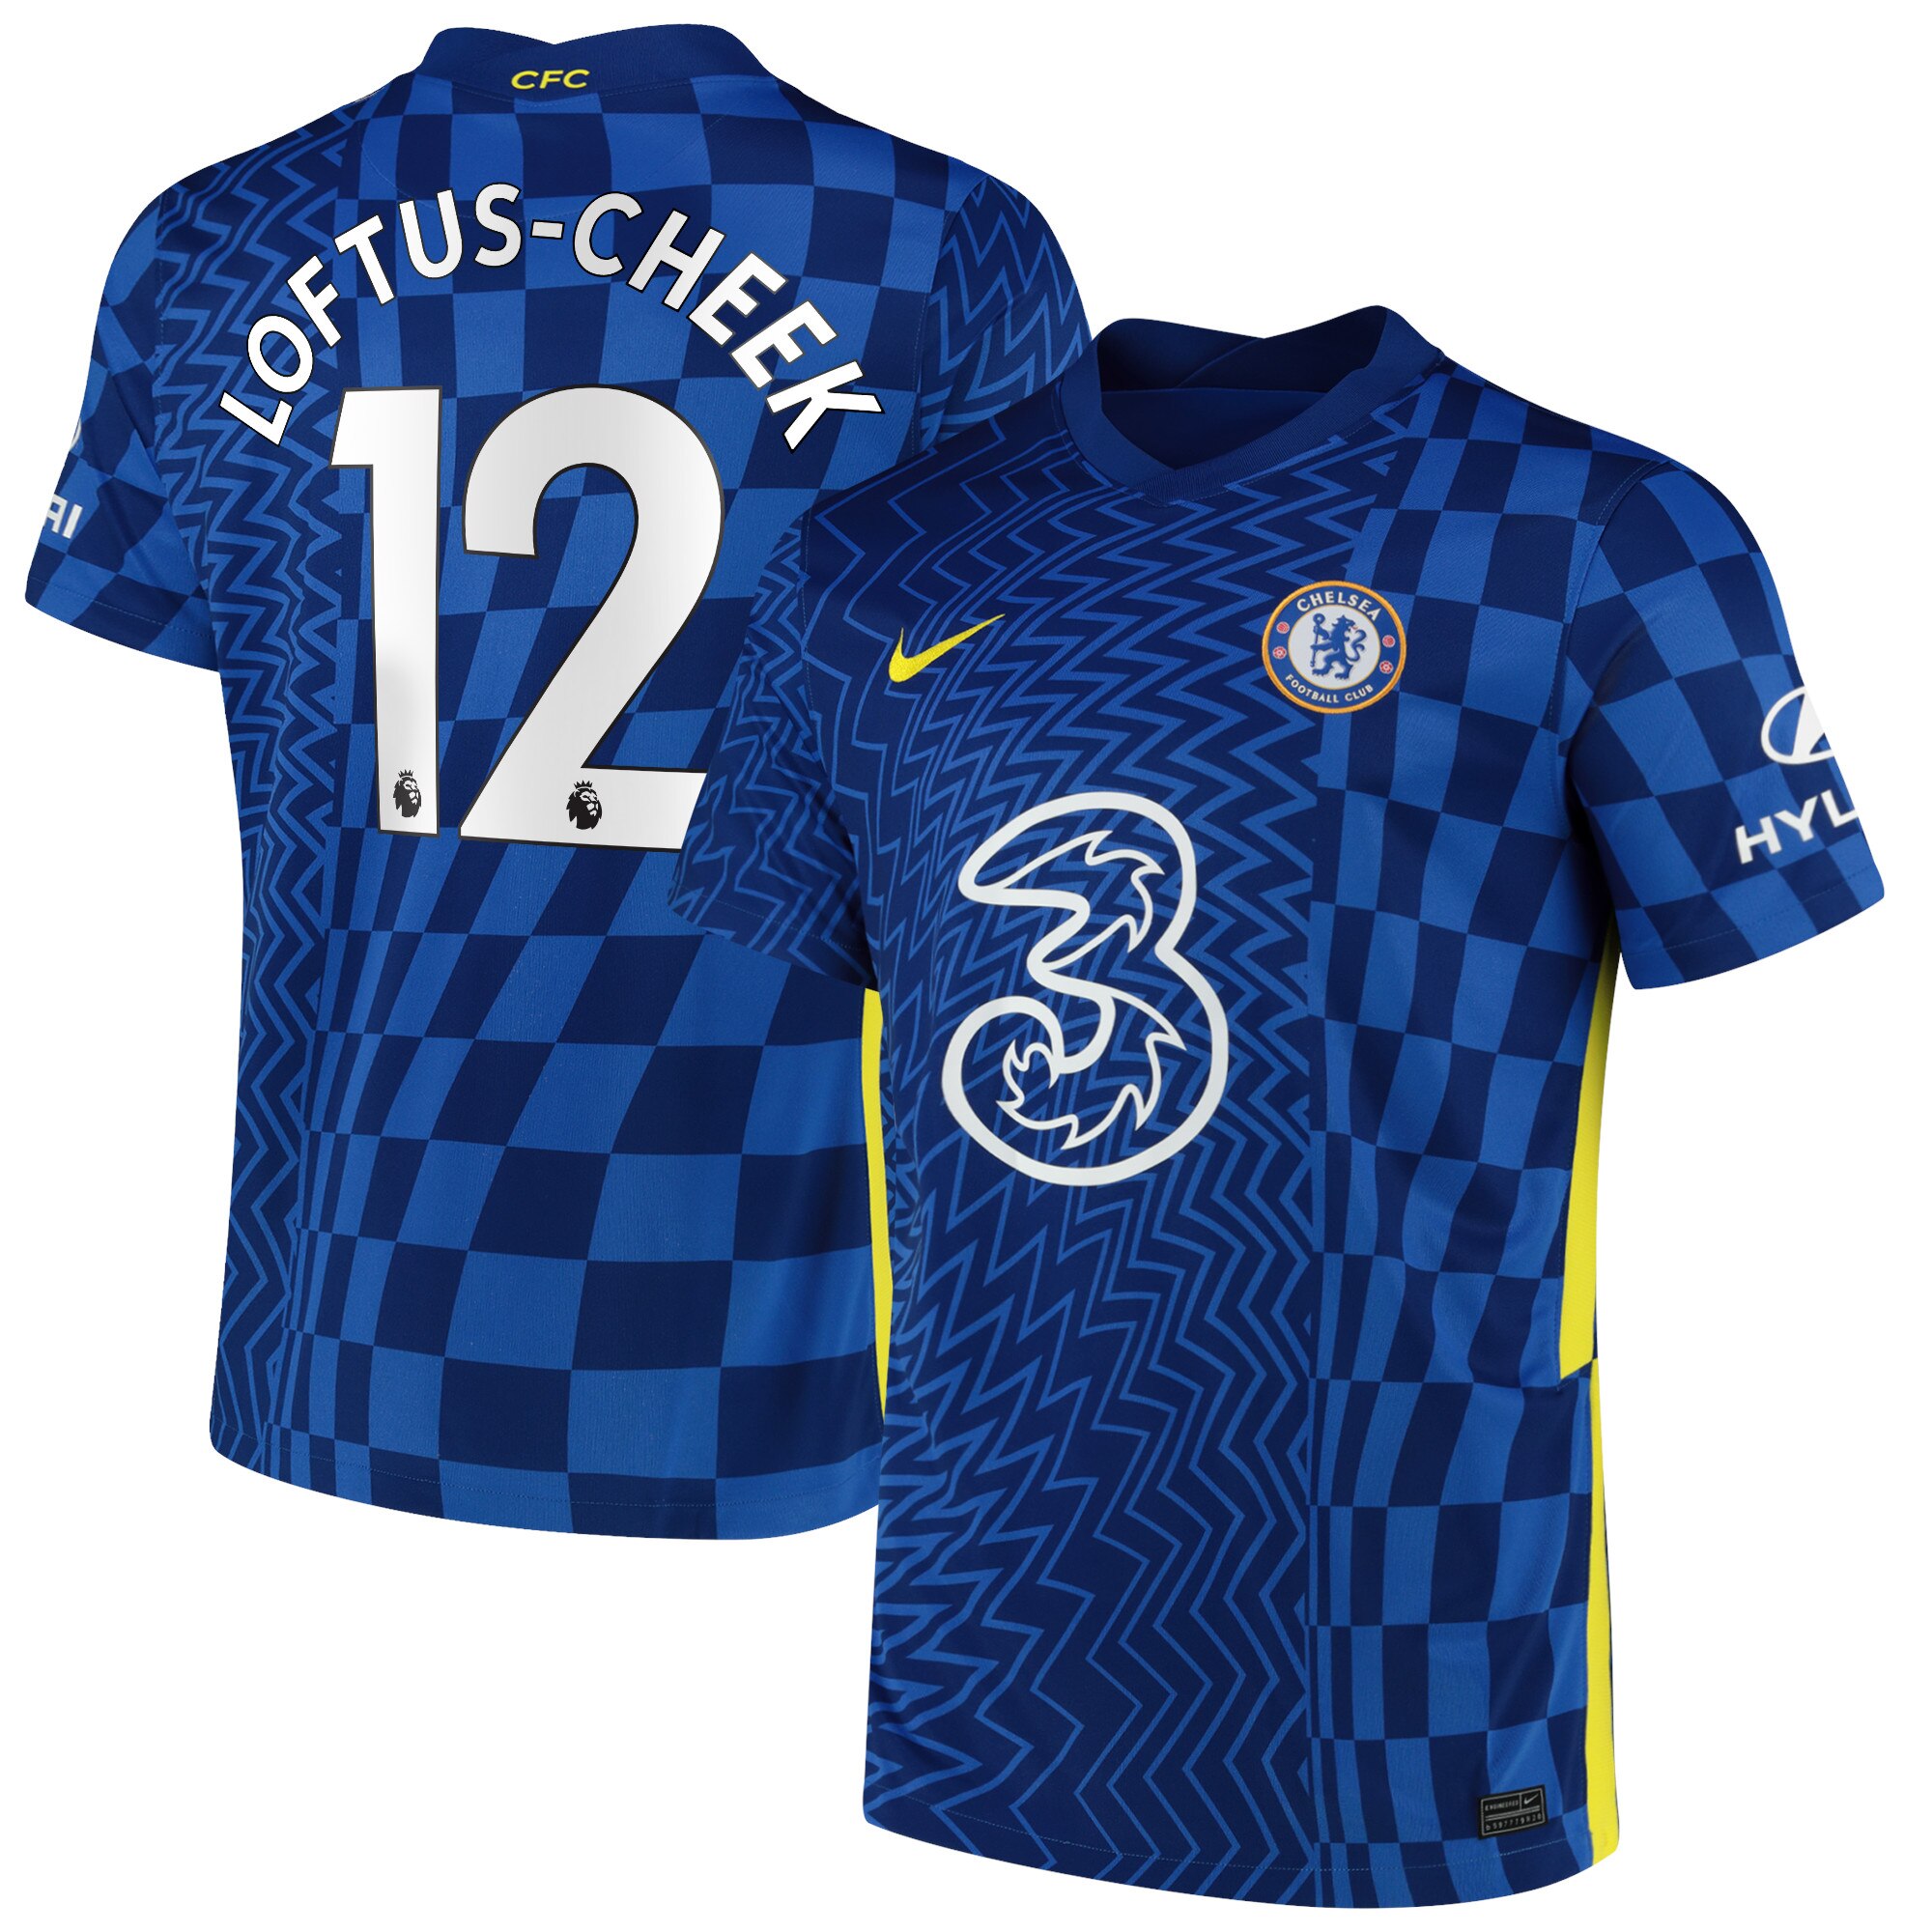 Chelsea Home Stadium Shirt 2021-22 with Loftus-Cheek 12 printing